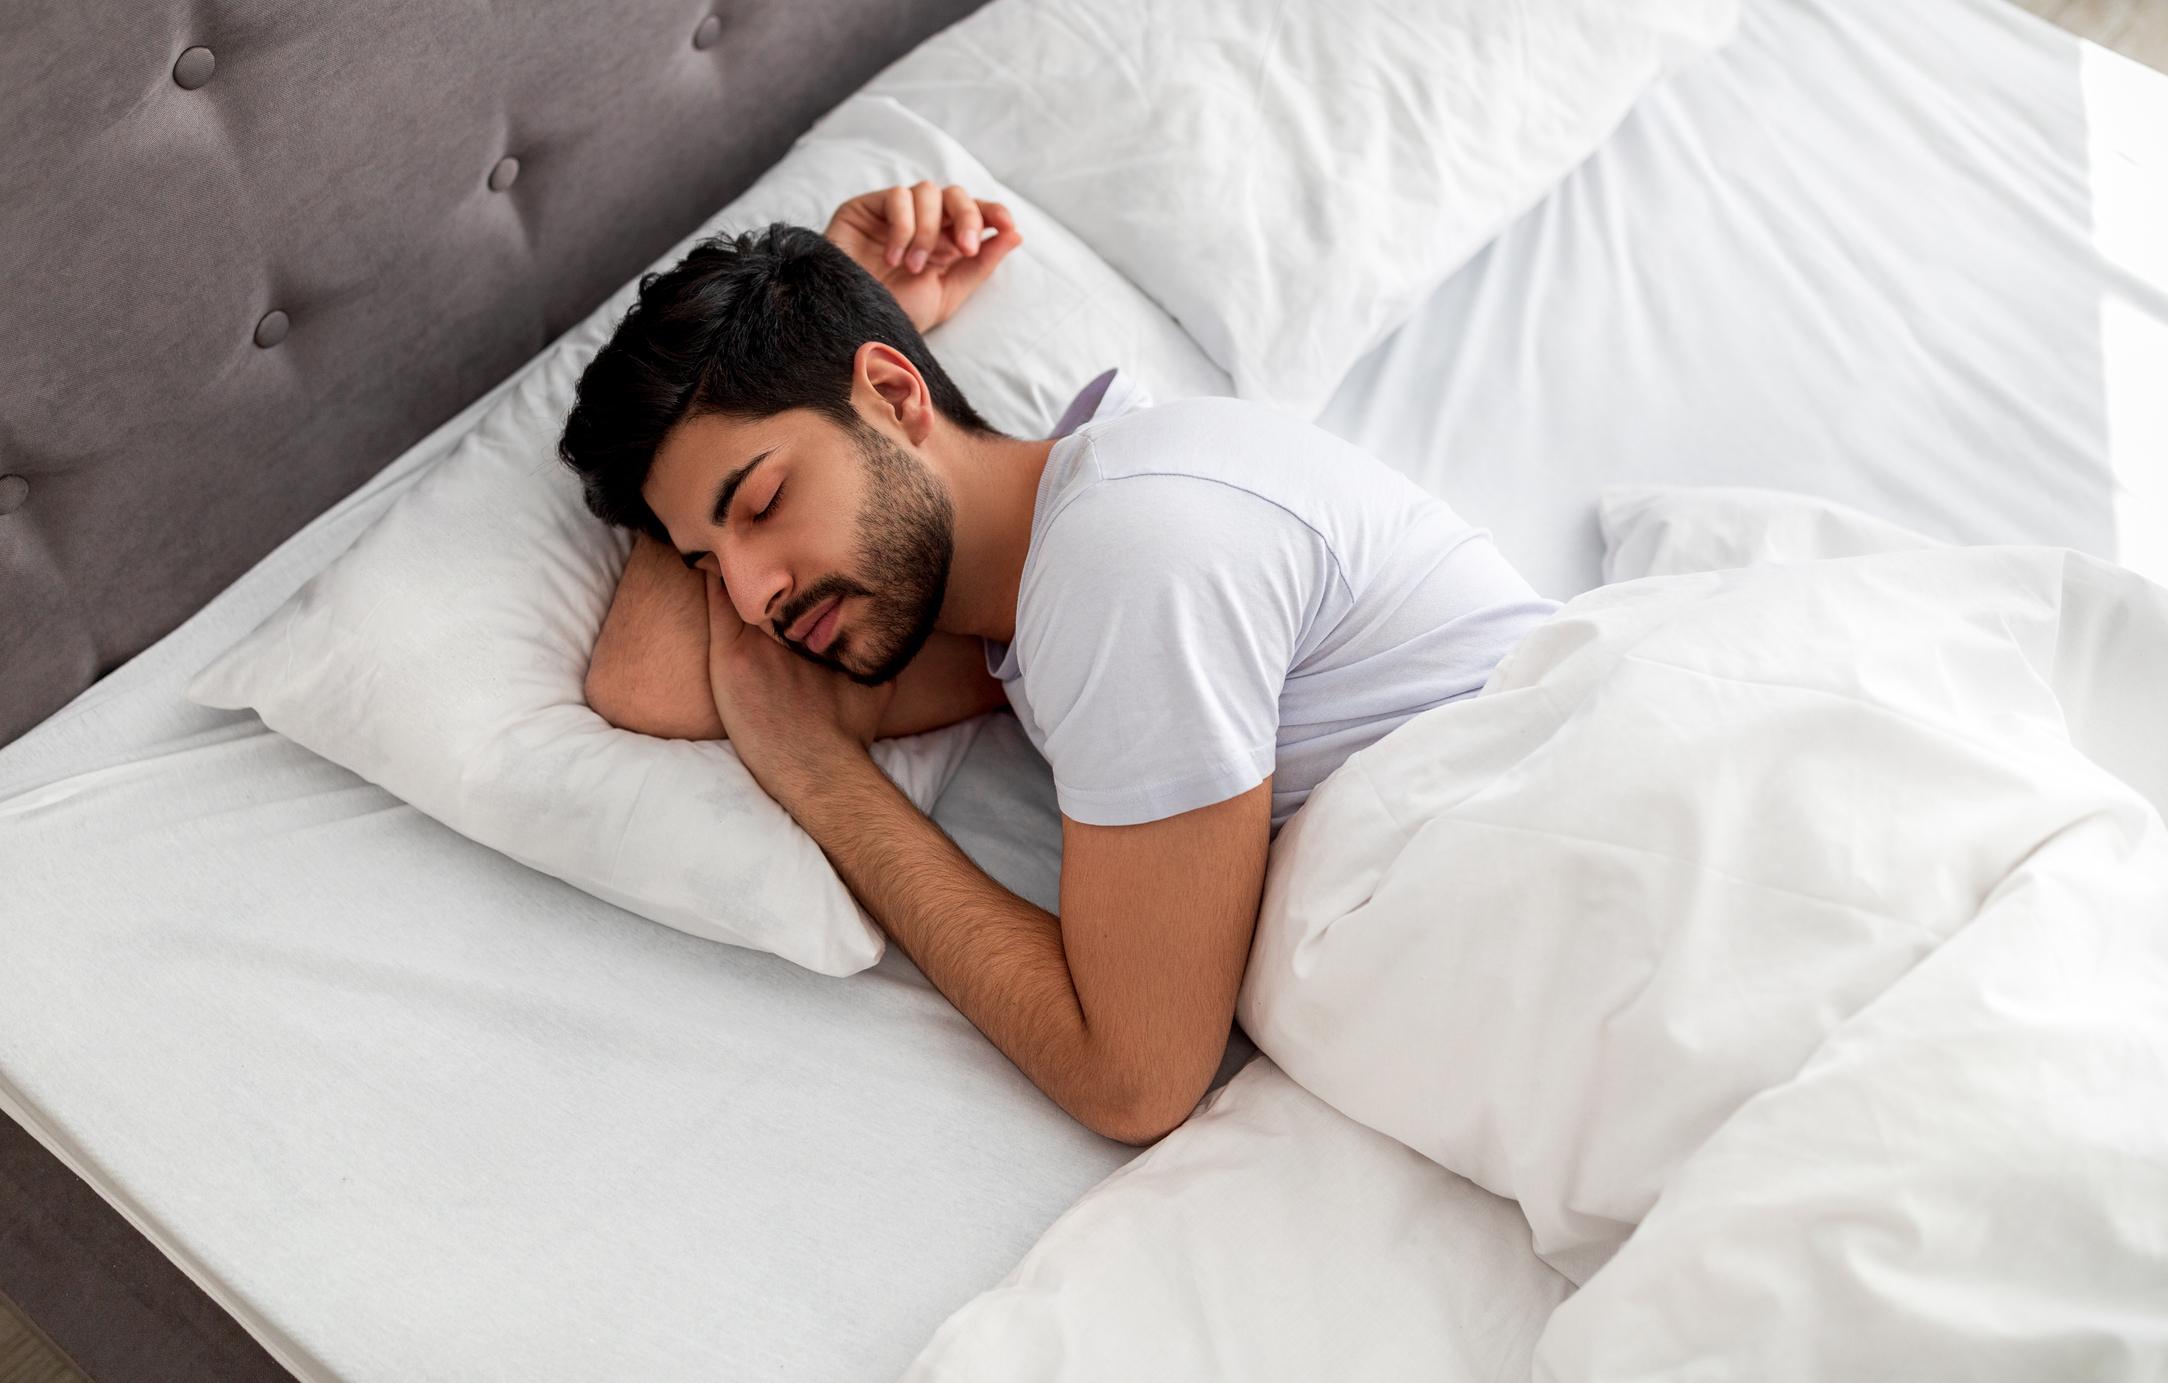 Irregular sleep carried major heart risk, study finds